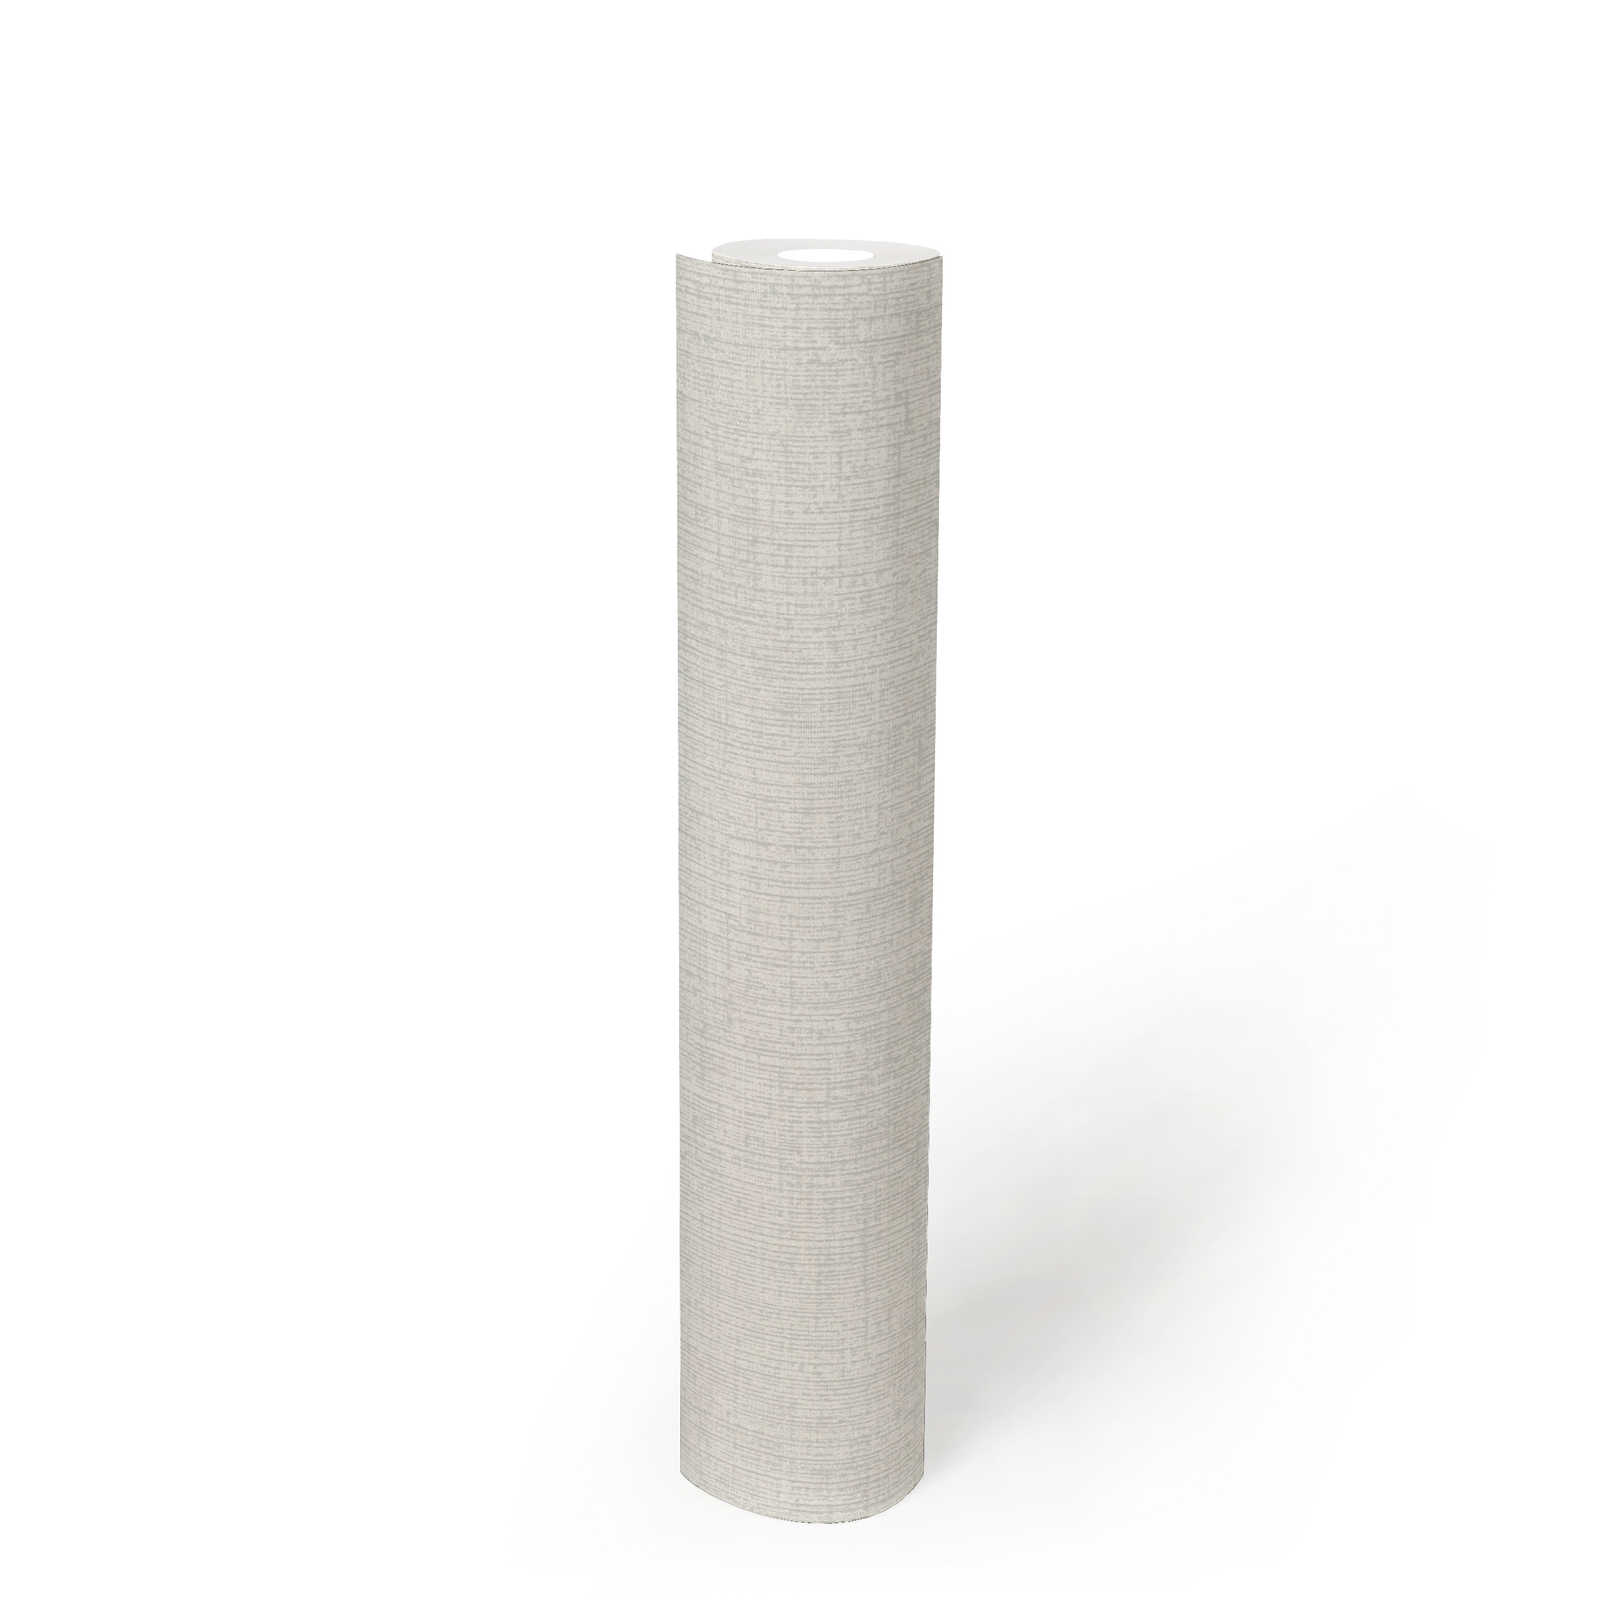             Papier peint blanc intissé avec structure en toile - blanc, métallique
        